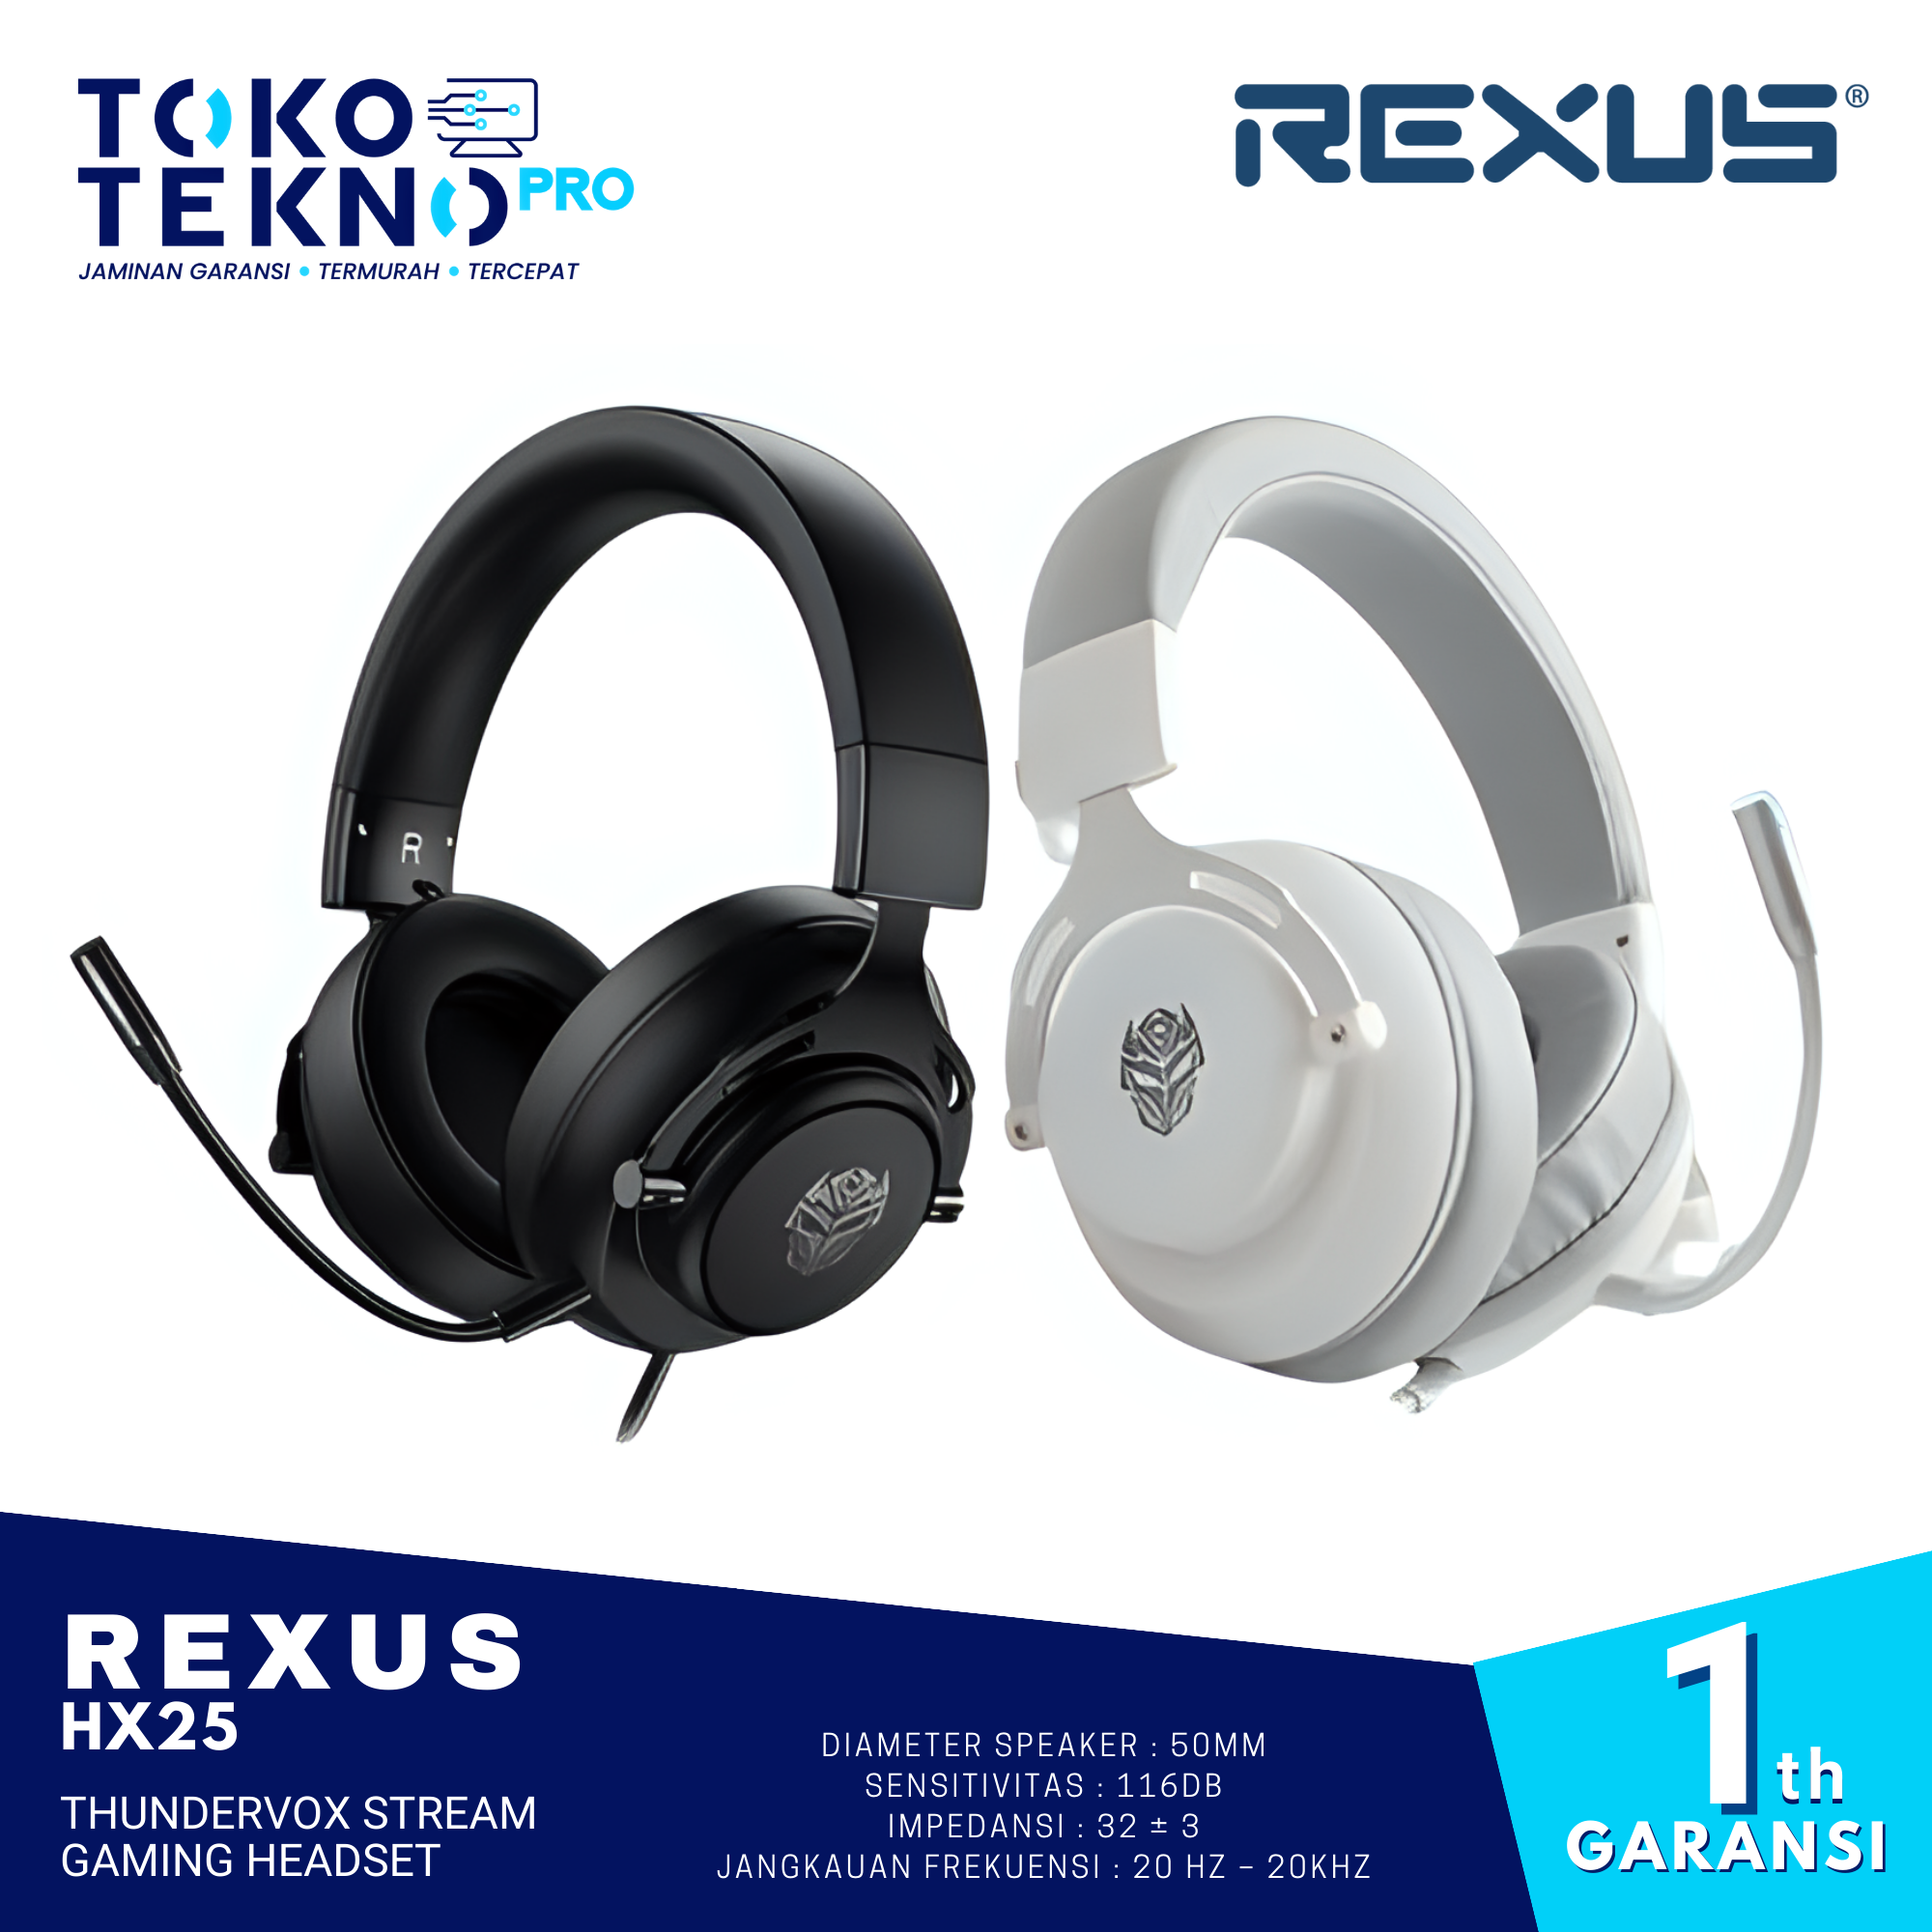 Rexus HX25 Thundervox Stream Gaming Headset